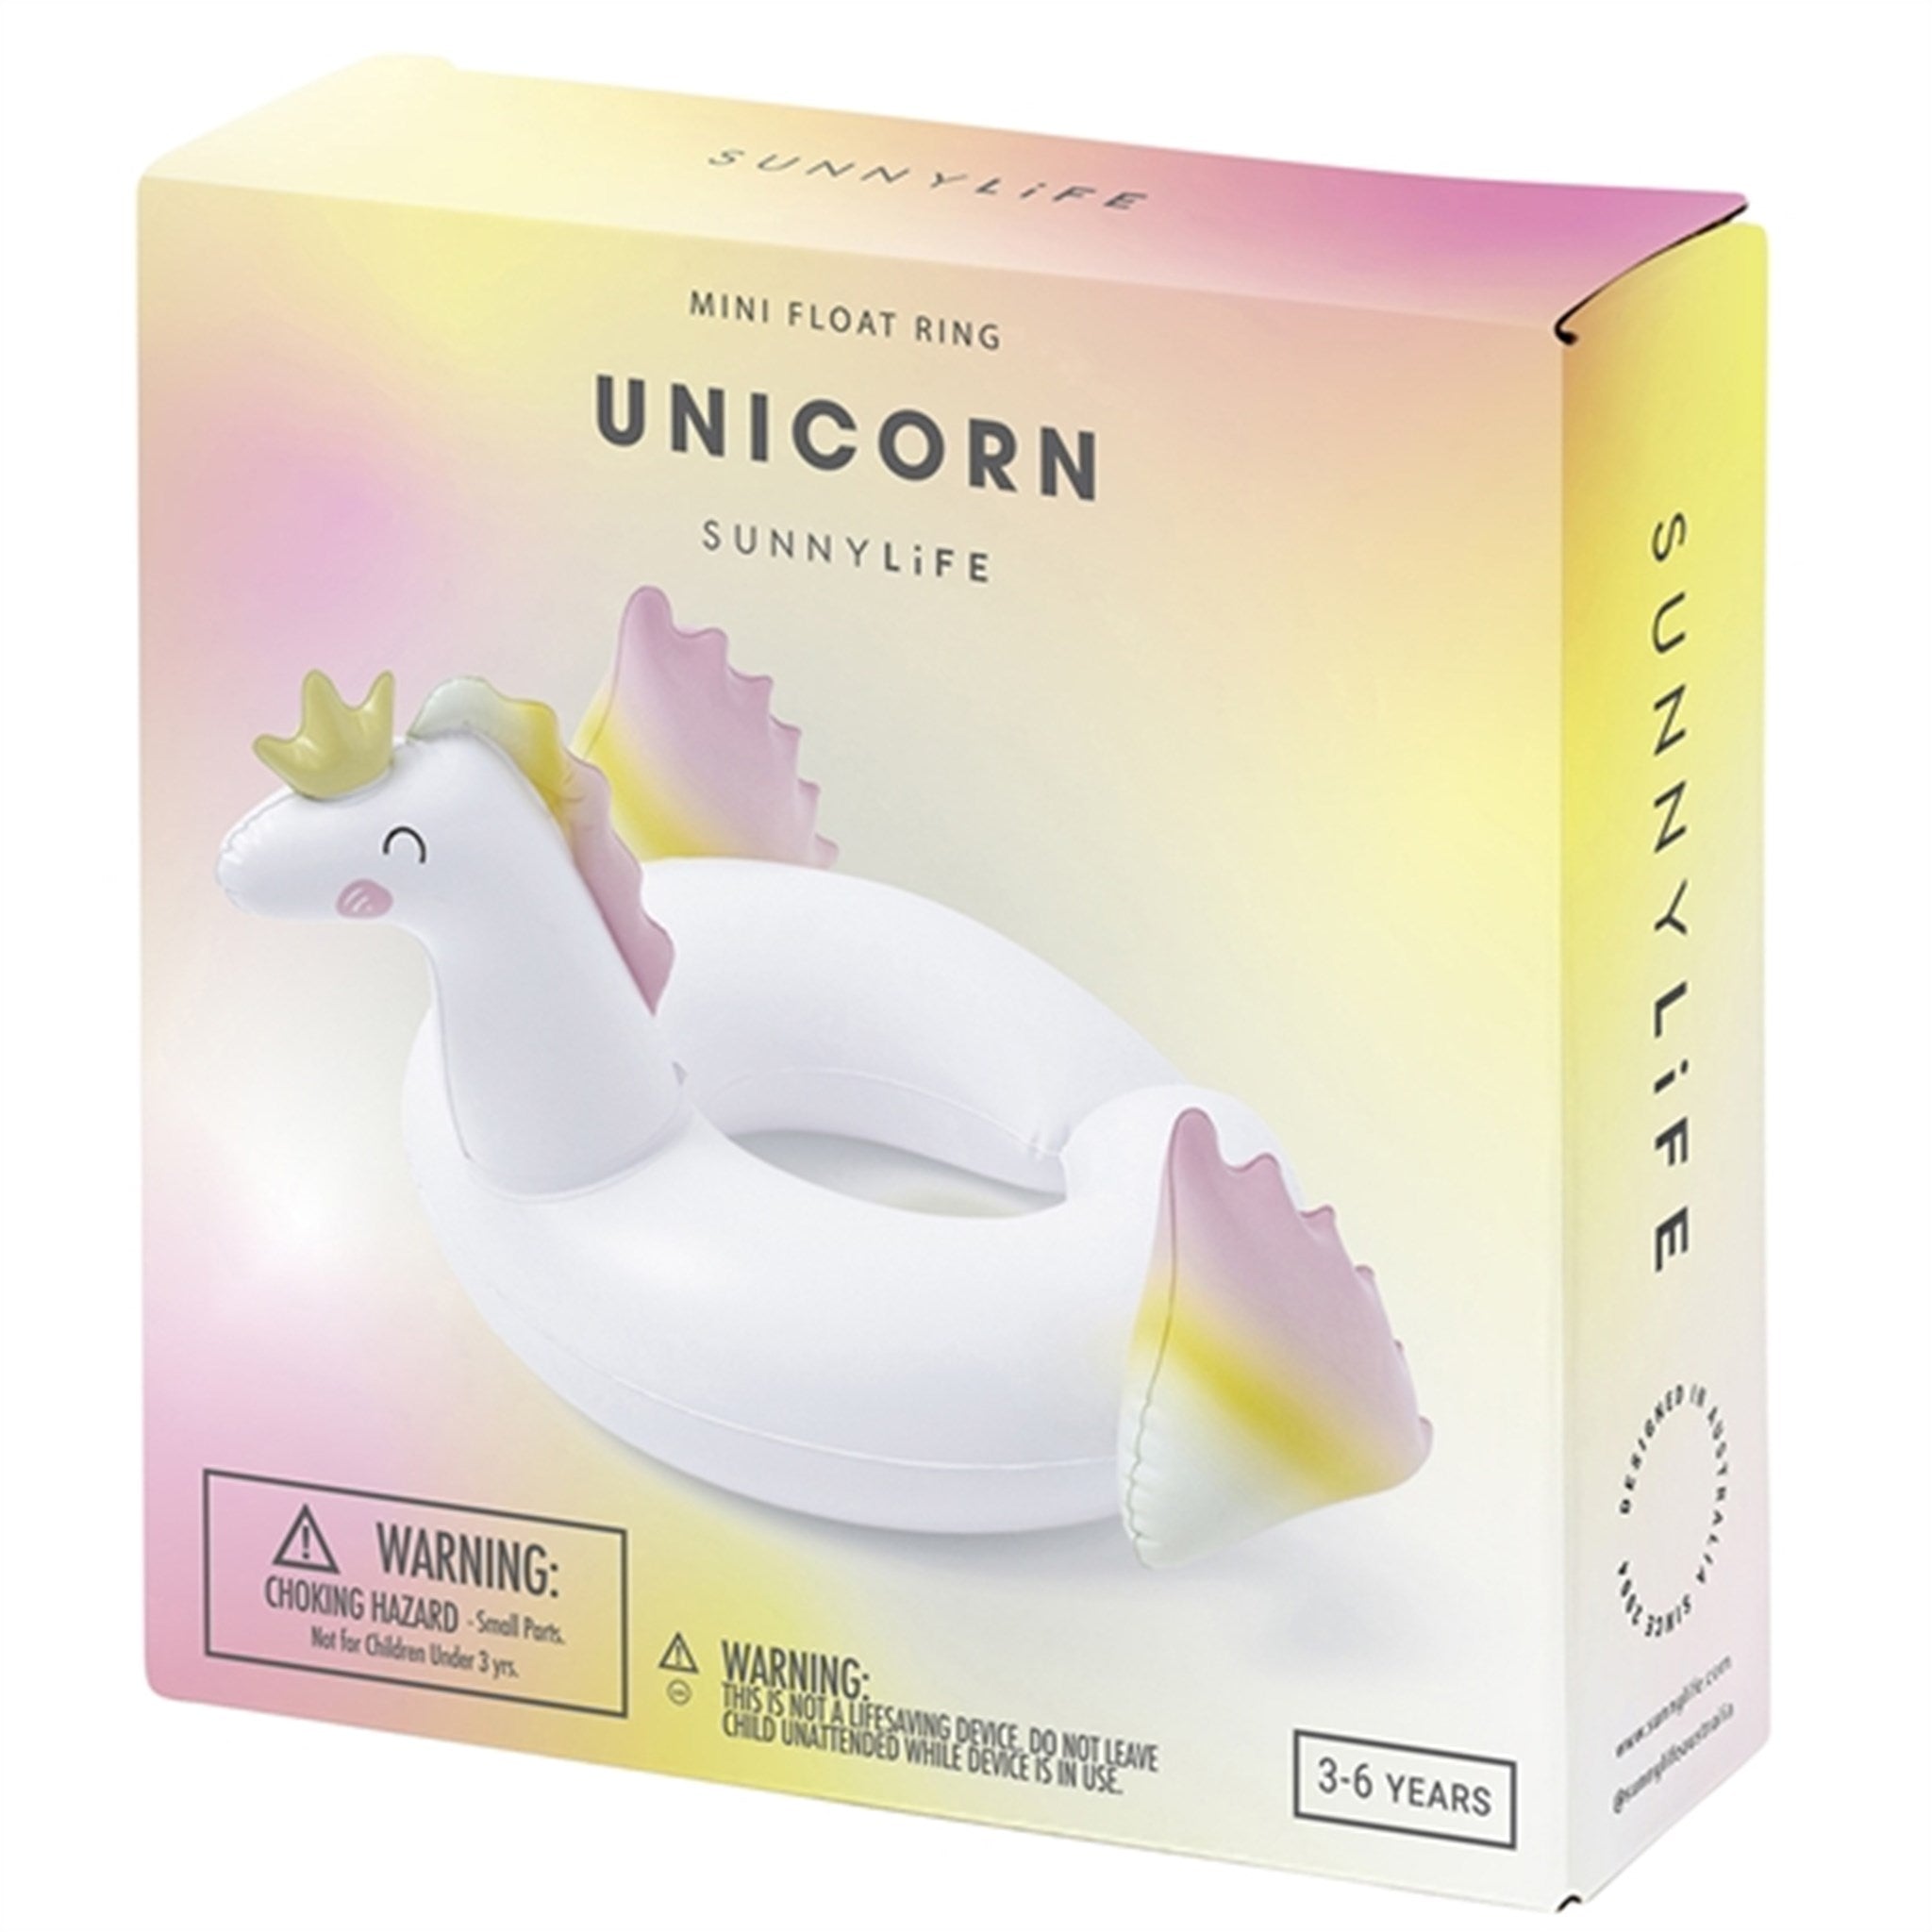 SunnyLife Mini Float Ring Unicorn 5